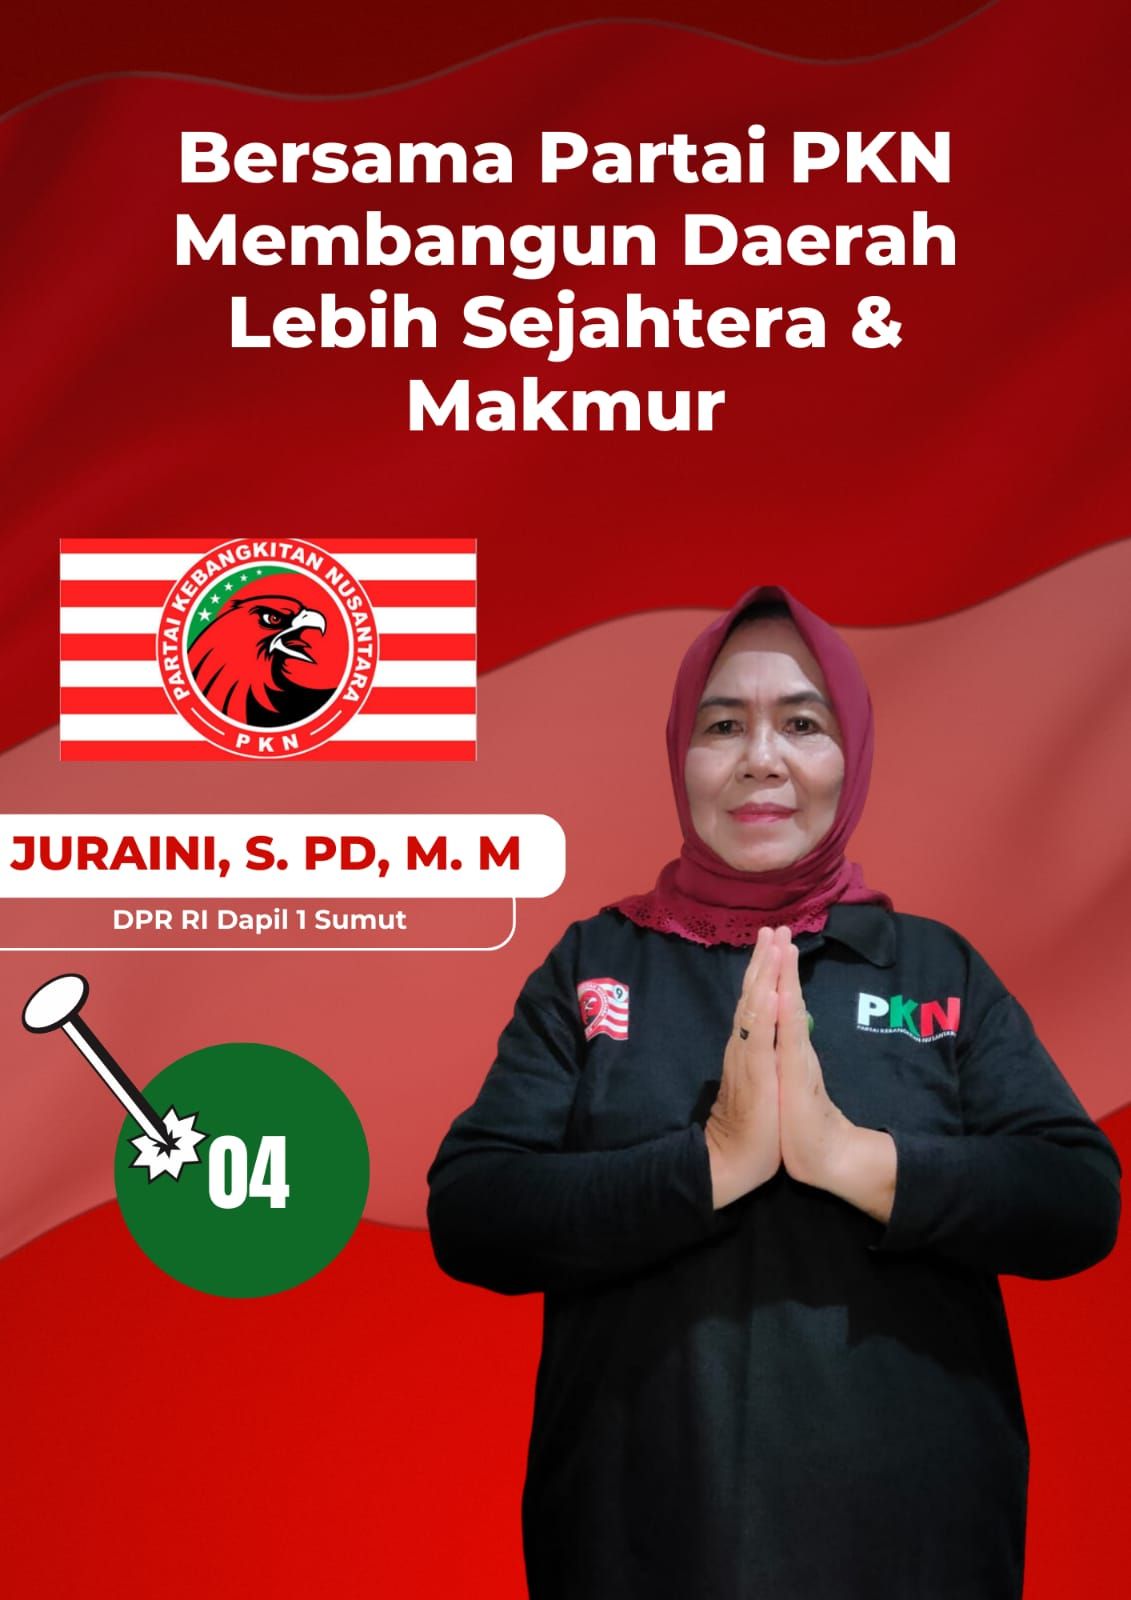 Partai PKN, Juraini S Pd MM Adalah Satu Satunya Caleg DPR RI Dapil Sumut I